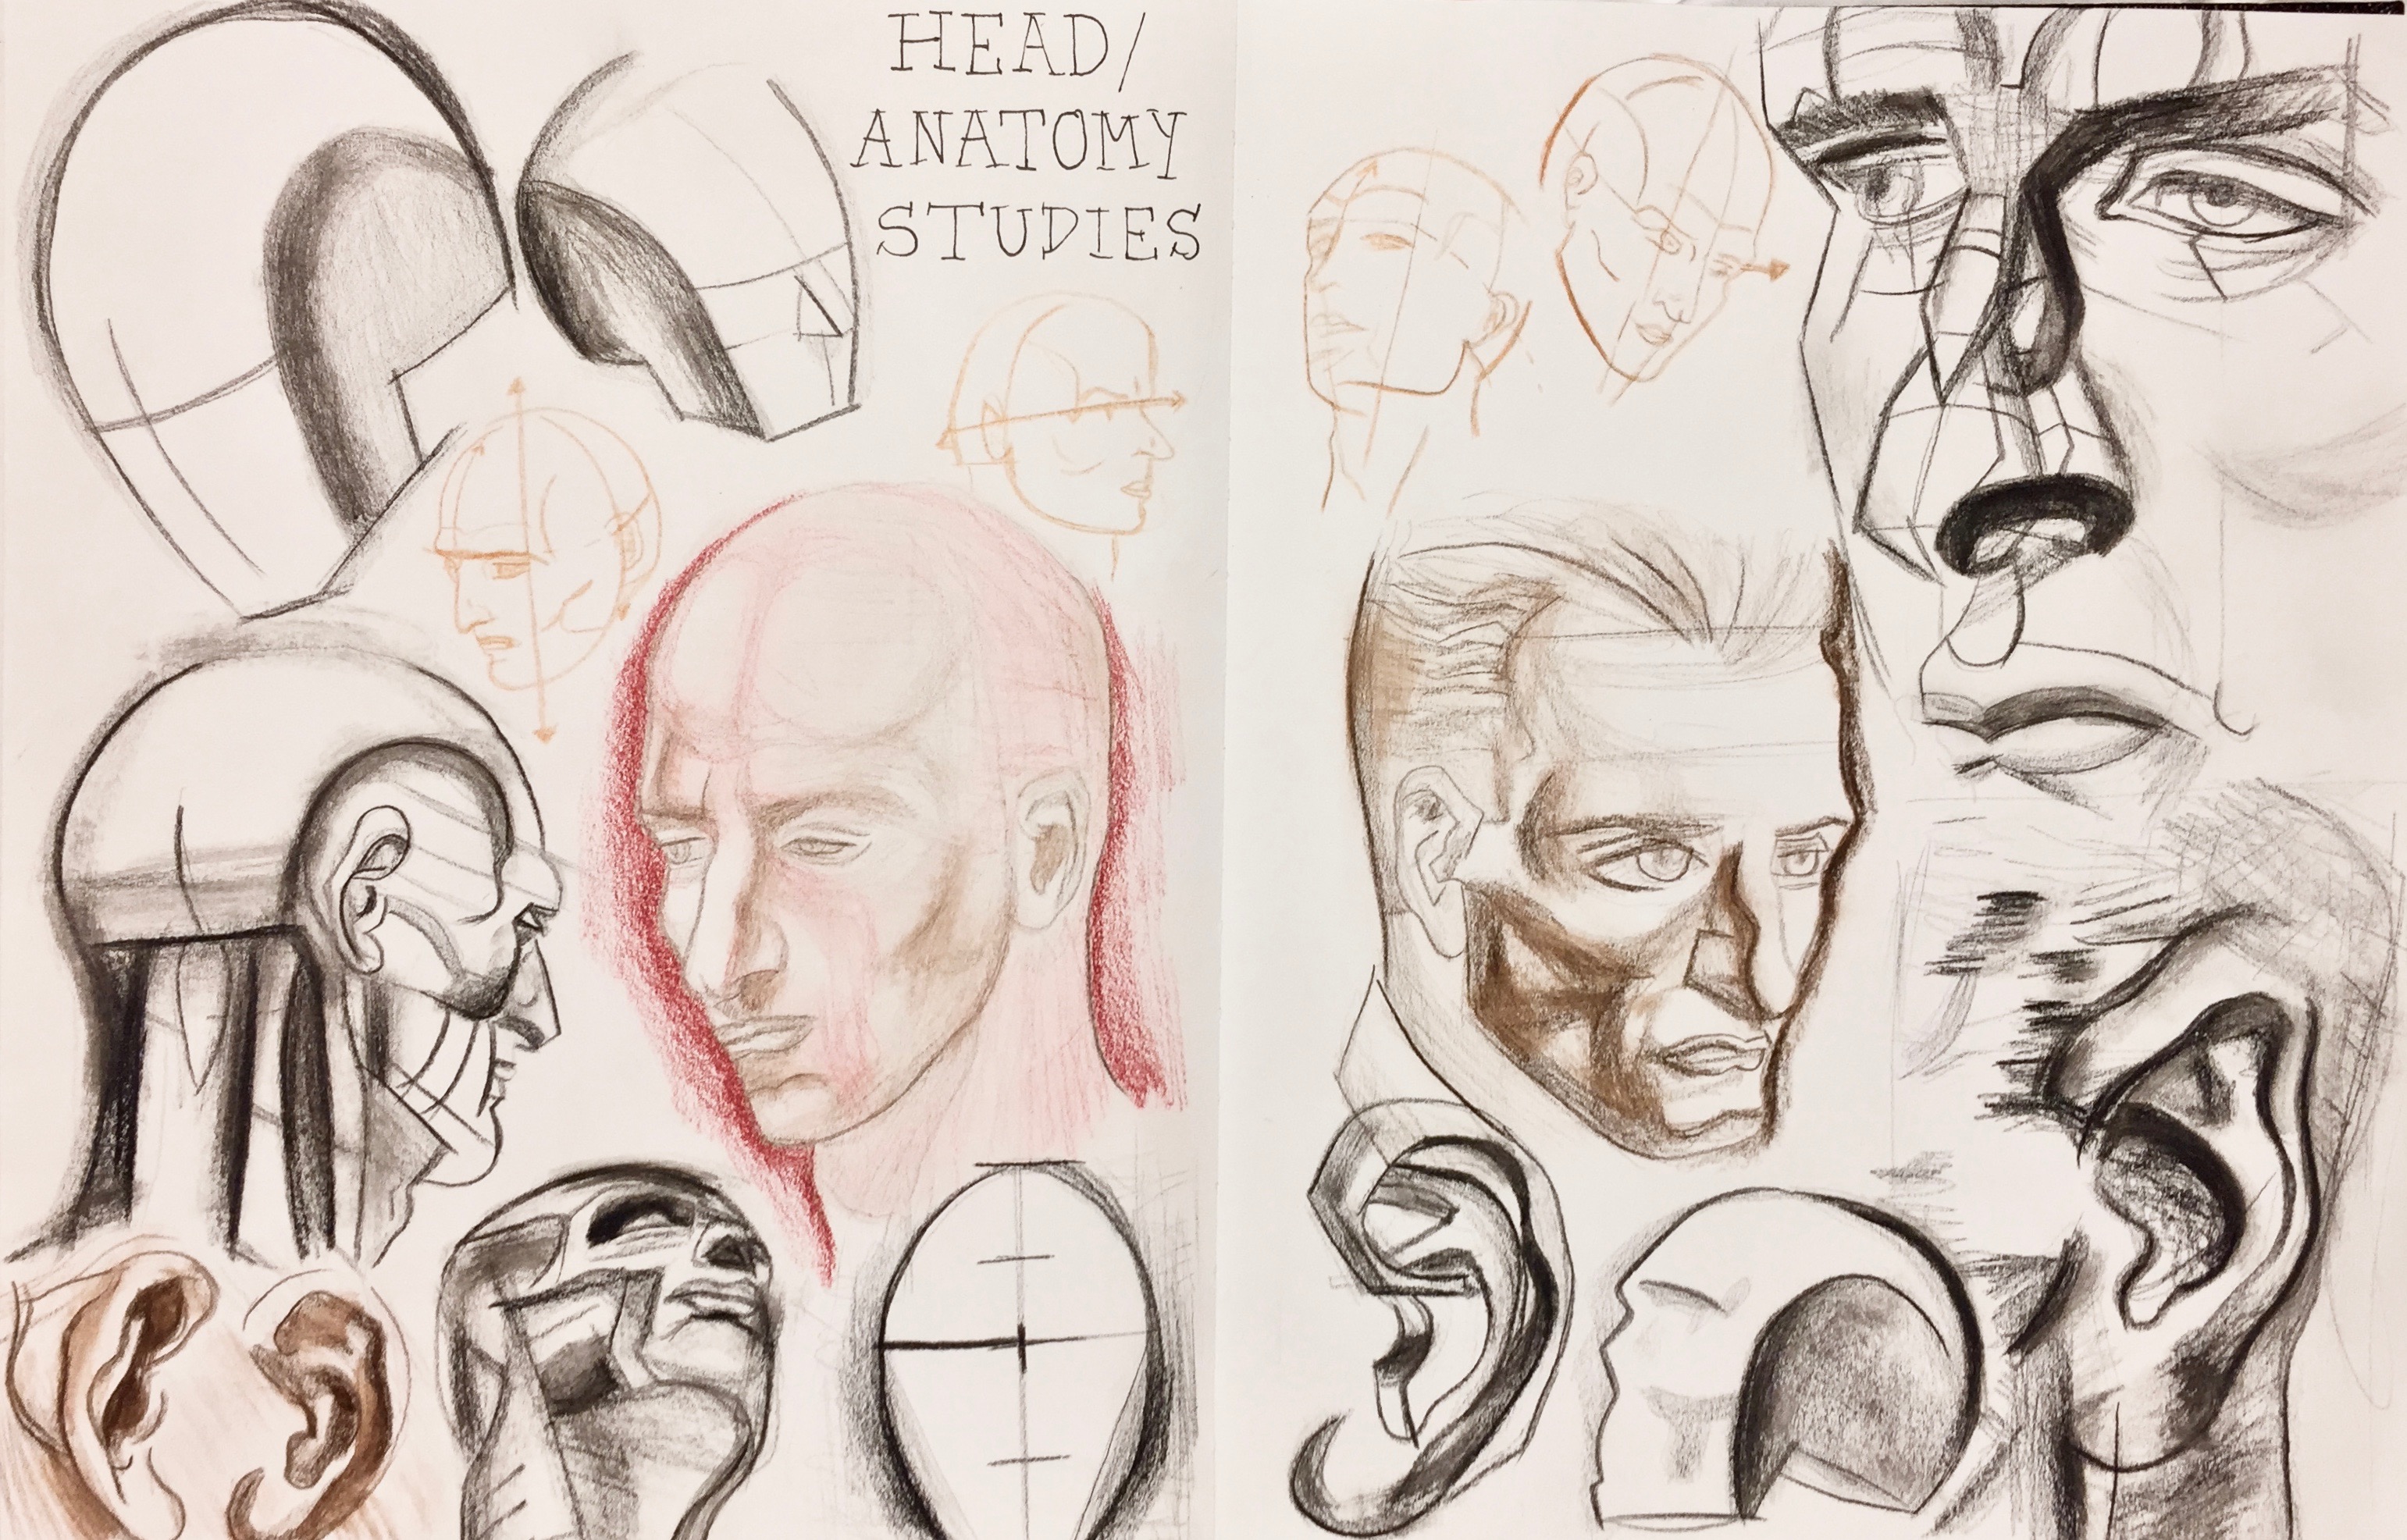 Head/Anatomy Sketchbook Study